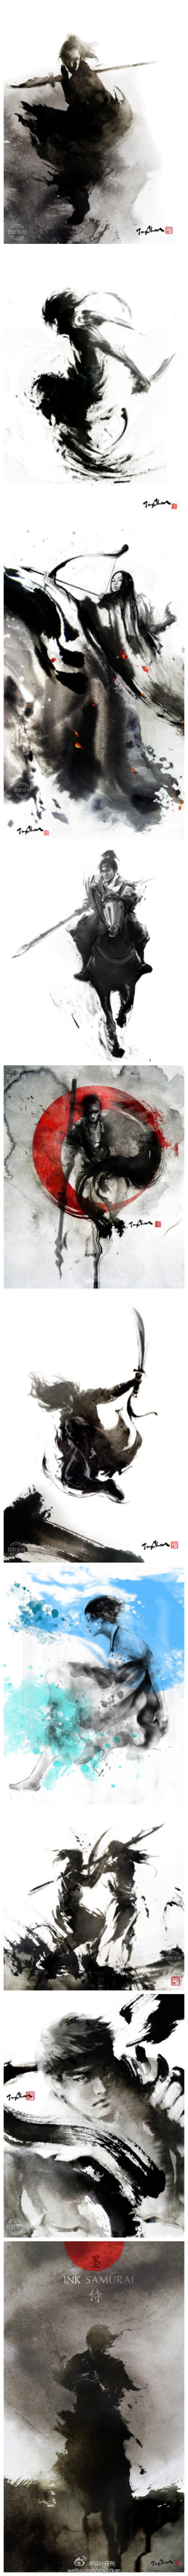 【水墨武侠】台湾女插画师张榕珊的水墨作品。充满力量，极具戏剧张力，蕴藏中国武侠精神。